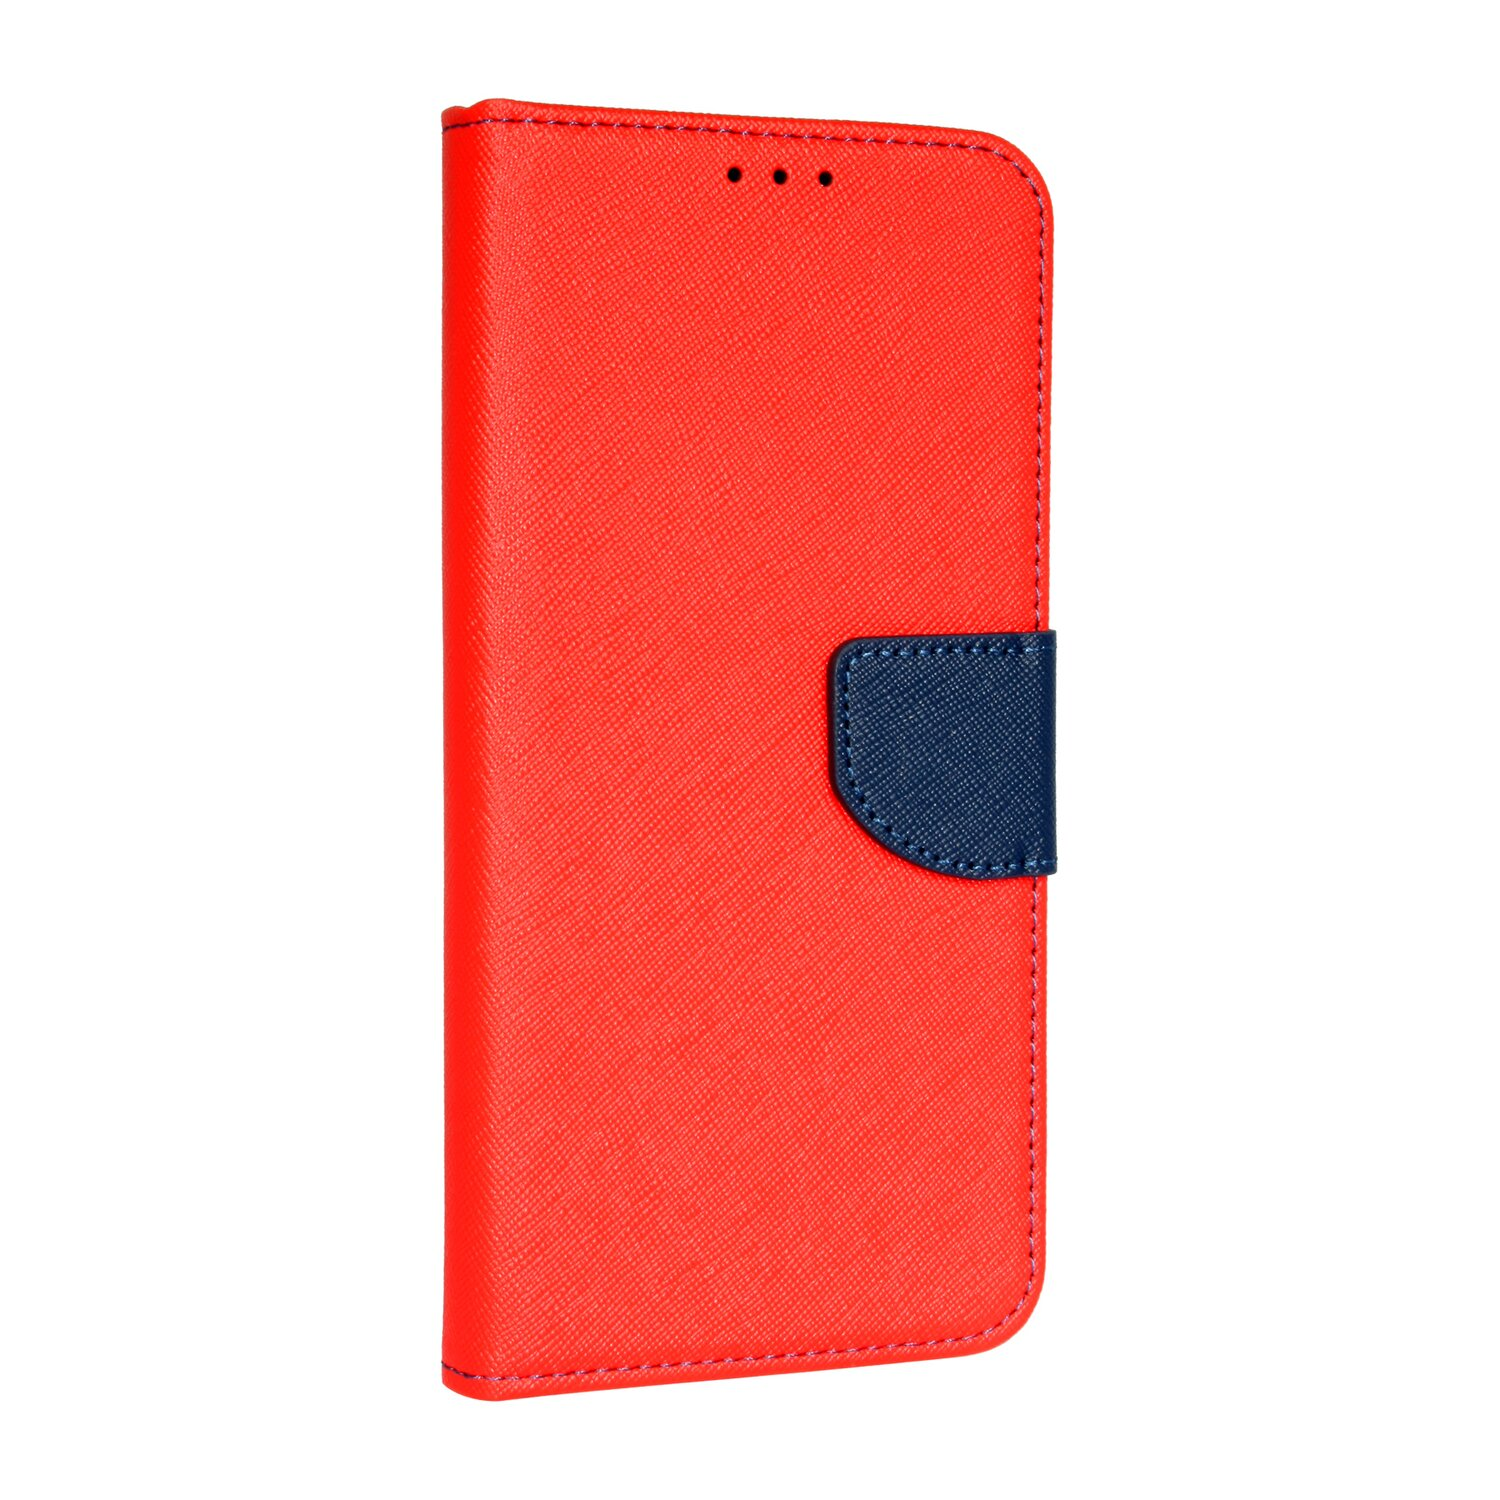 Rot-Blau Tasche, Redmi Bookcover, Xiaomi, COFI Pro, Note Buch 10